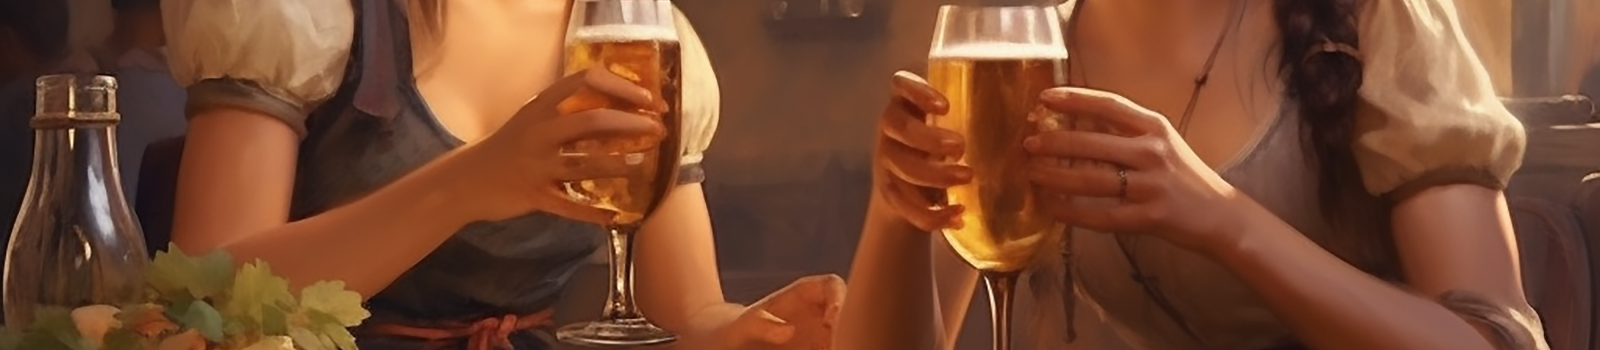 Zwei Frauen trinken gemütlich ihr Bier